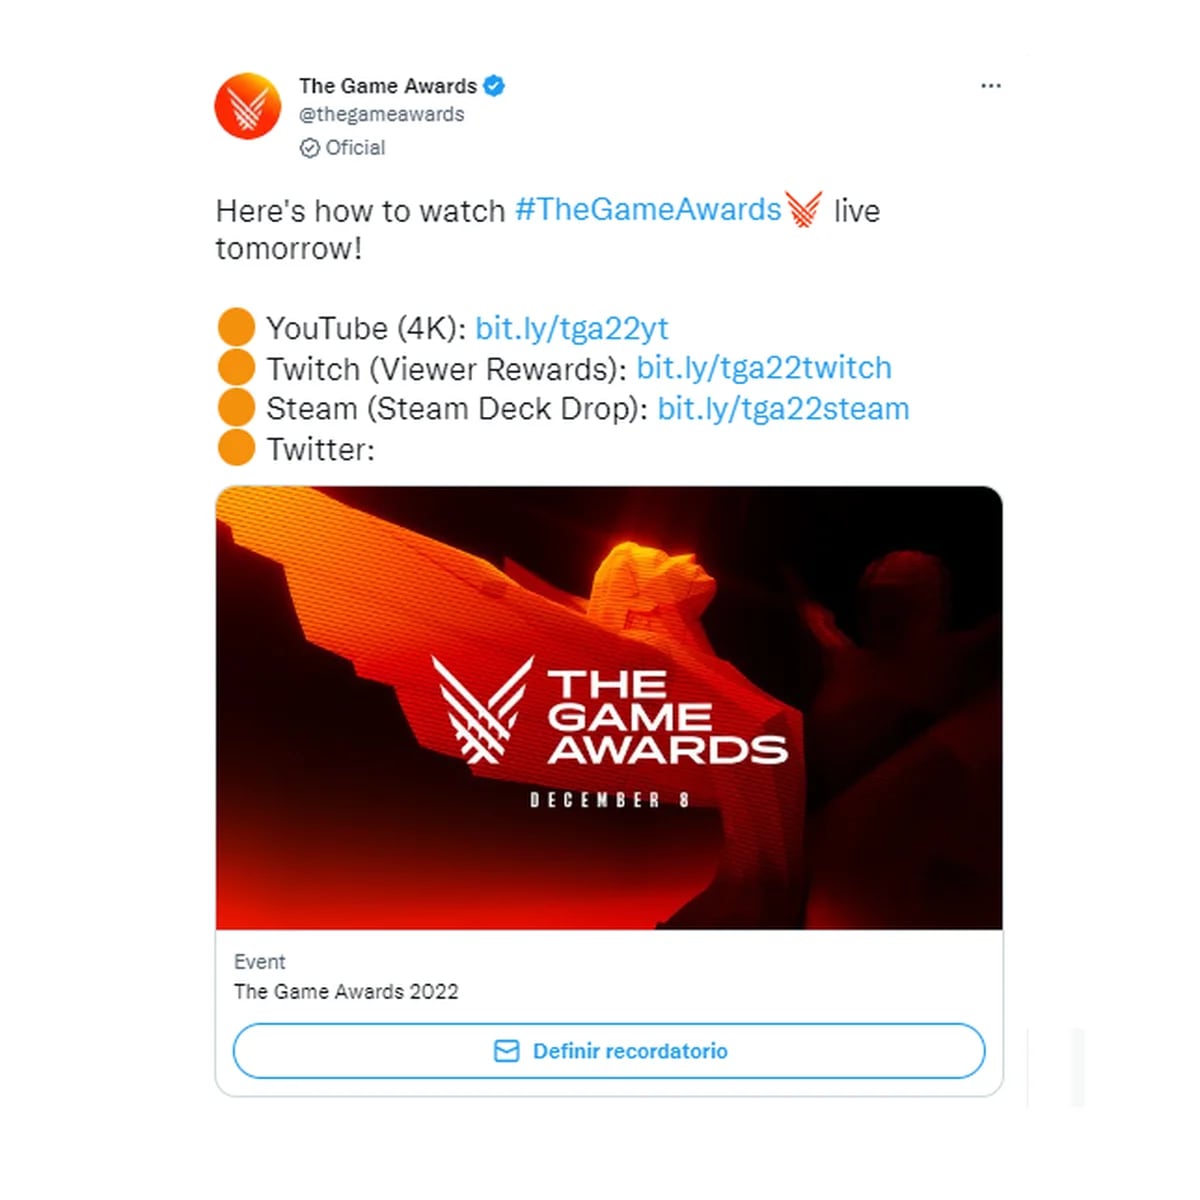 The Game Awards 2020: cuándo y a qué hora ver los premios - Uno TV